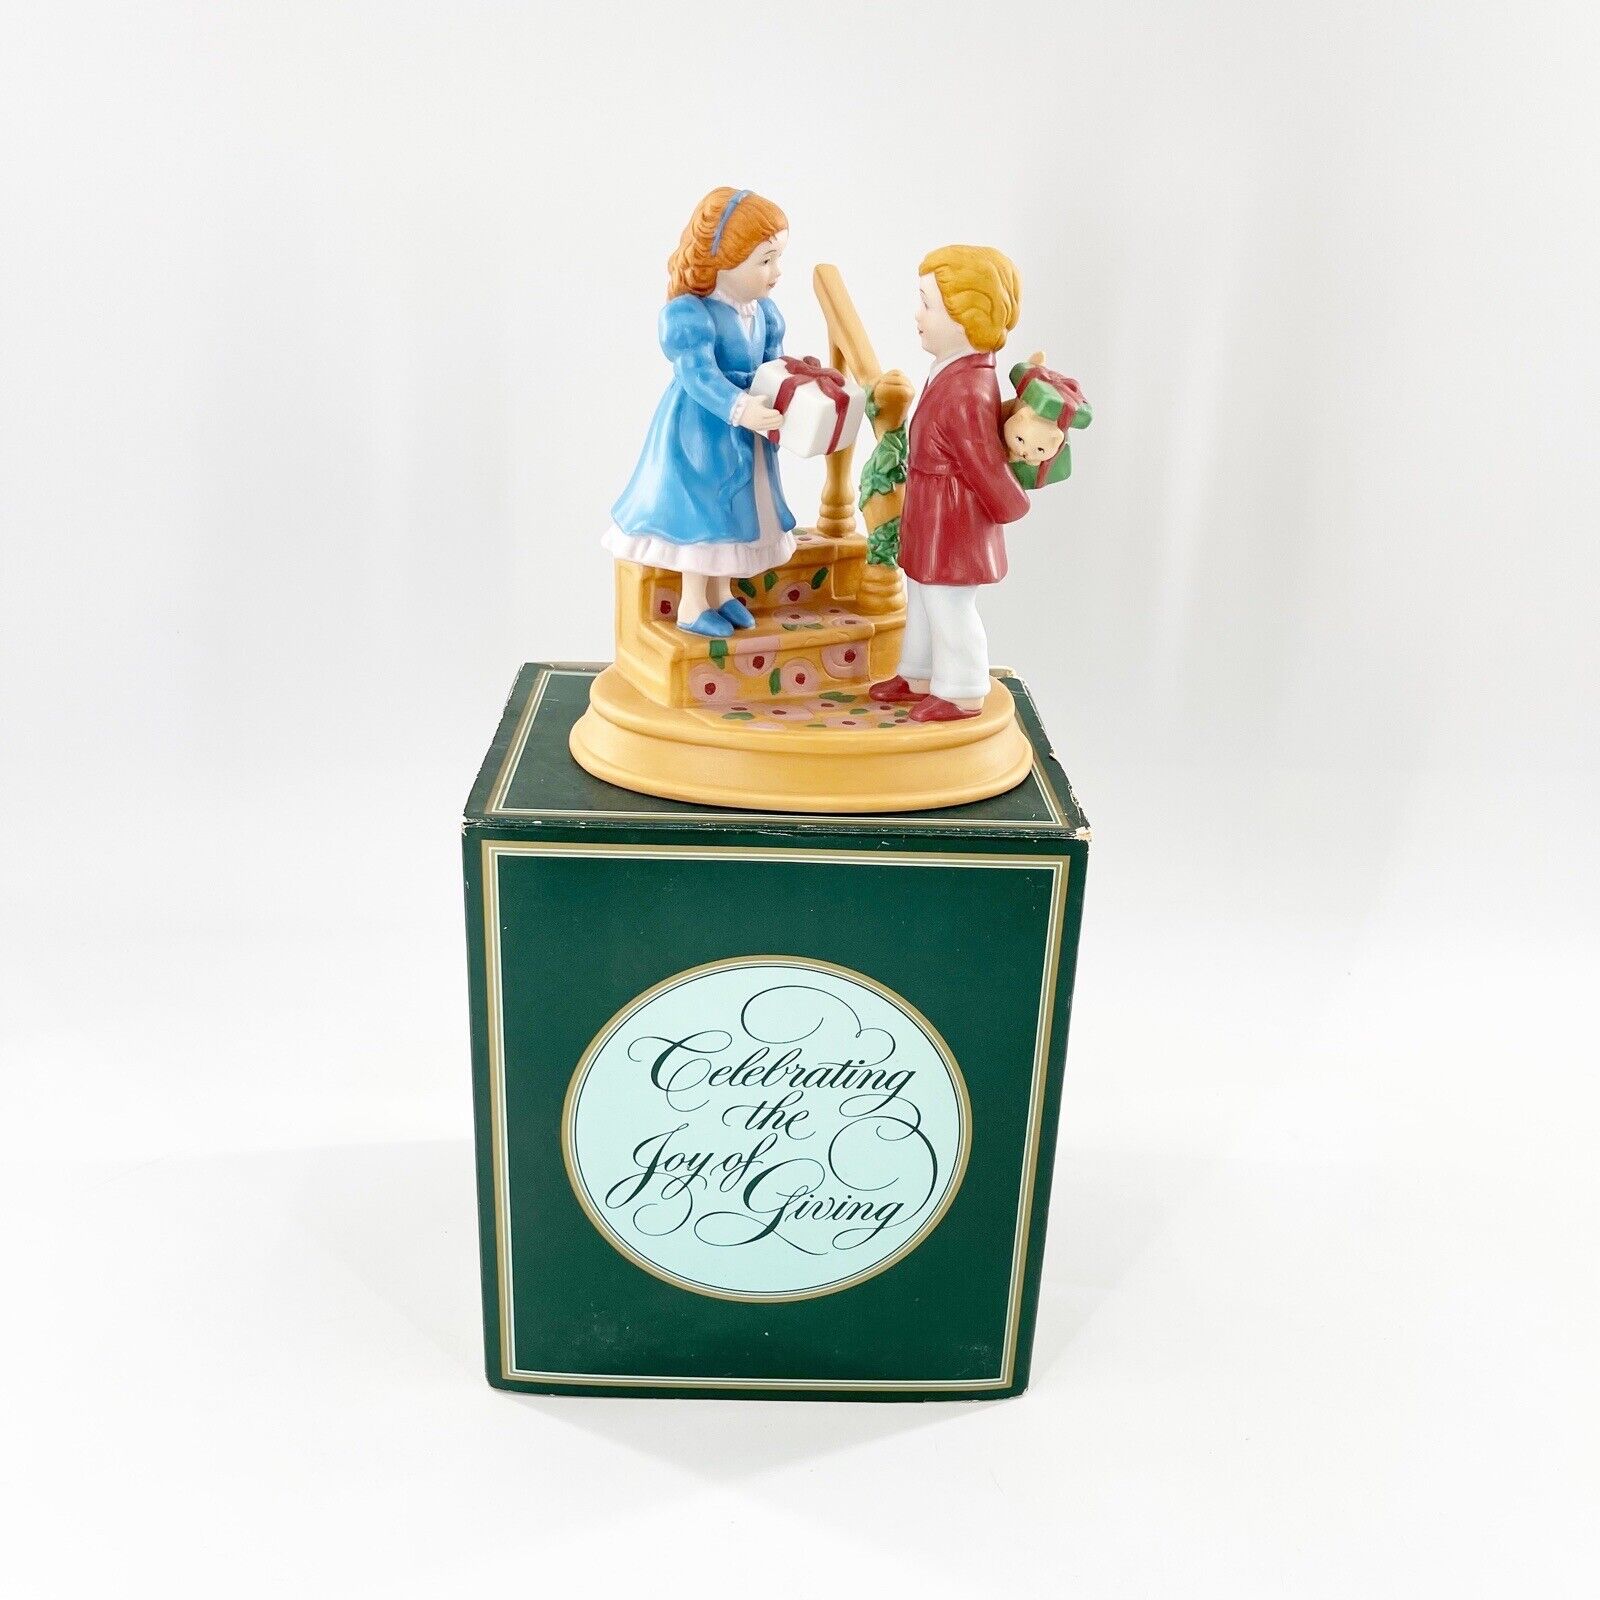 Vtg Avon Christmas 1994 Memories Celebrating the Joy of Giving Figurine 4th